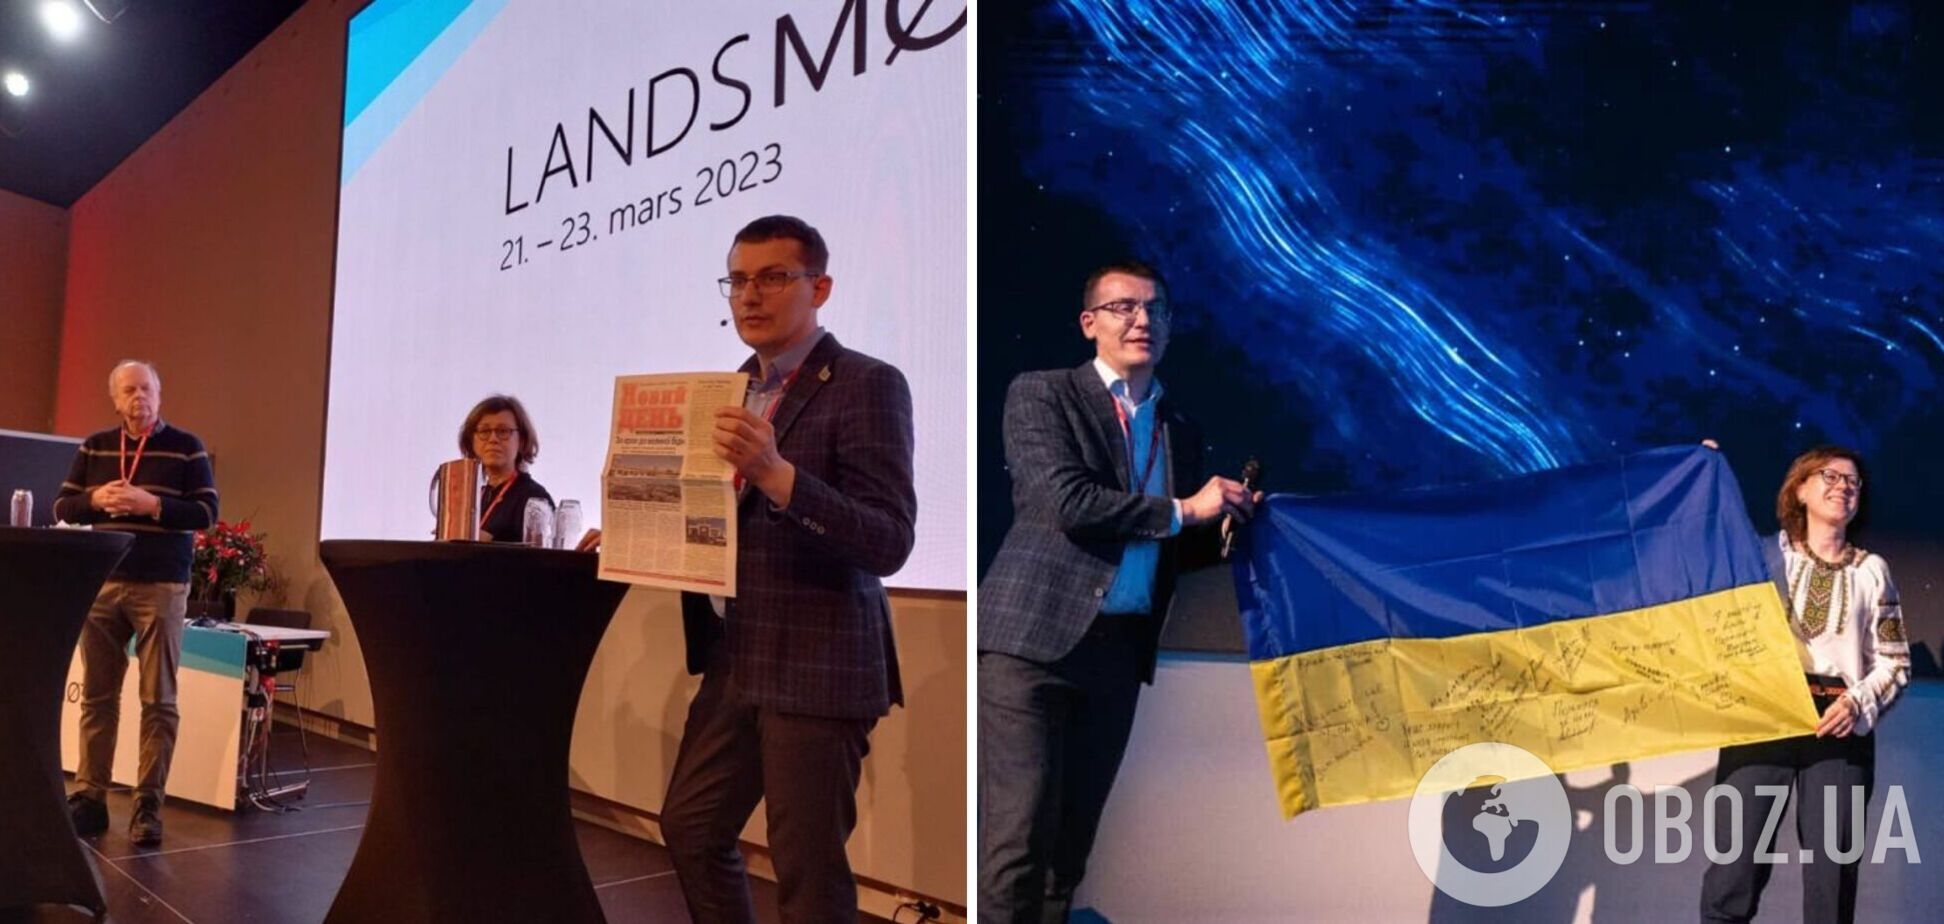 'Помогите украинским СМИ стать более устойчивыми': руководители НСЖУ приняли участие в конгрессе журналистов Норвегии